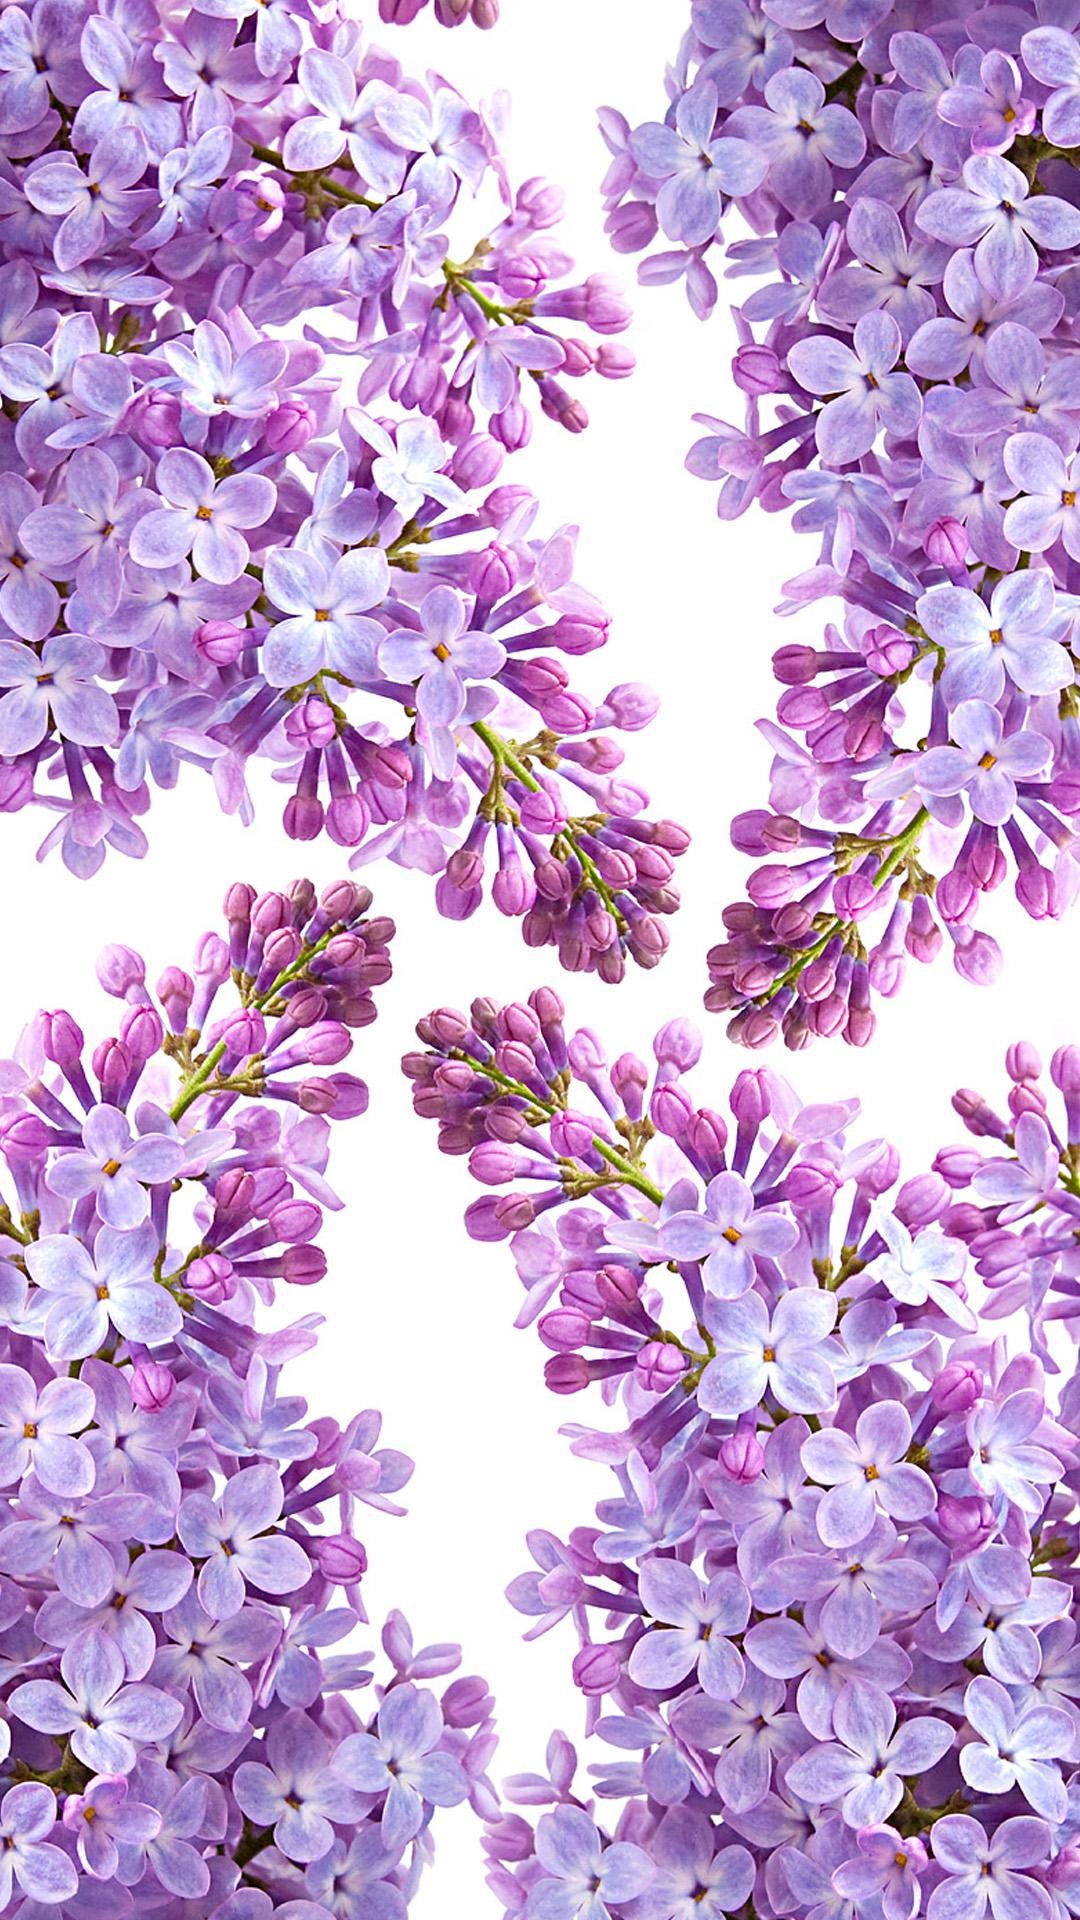 라일락 벽지,라일락 꽃,라벤더,제비꽃,보라색,라일락 꽃